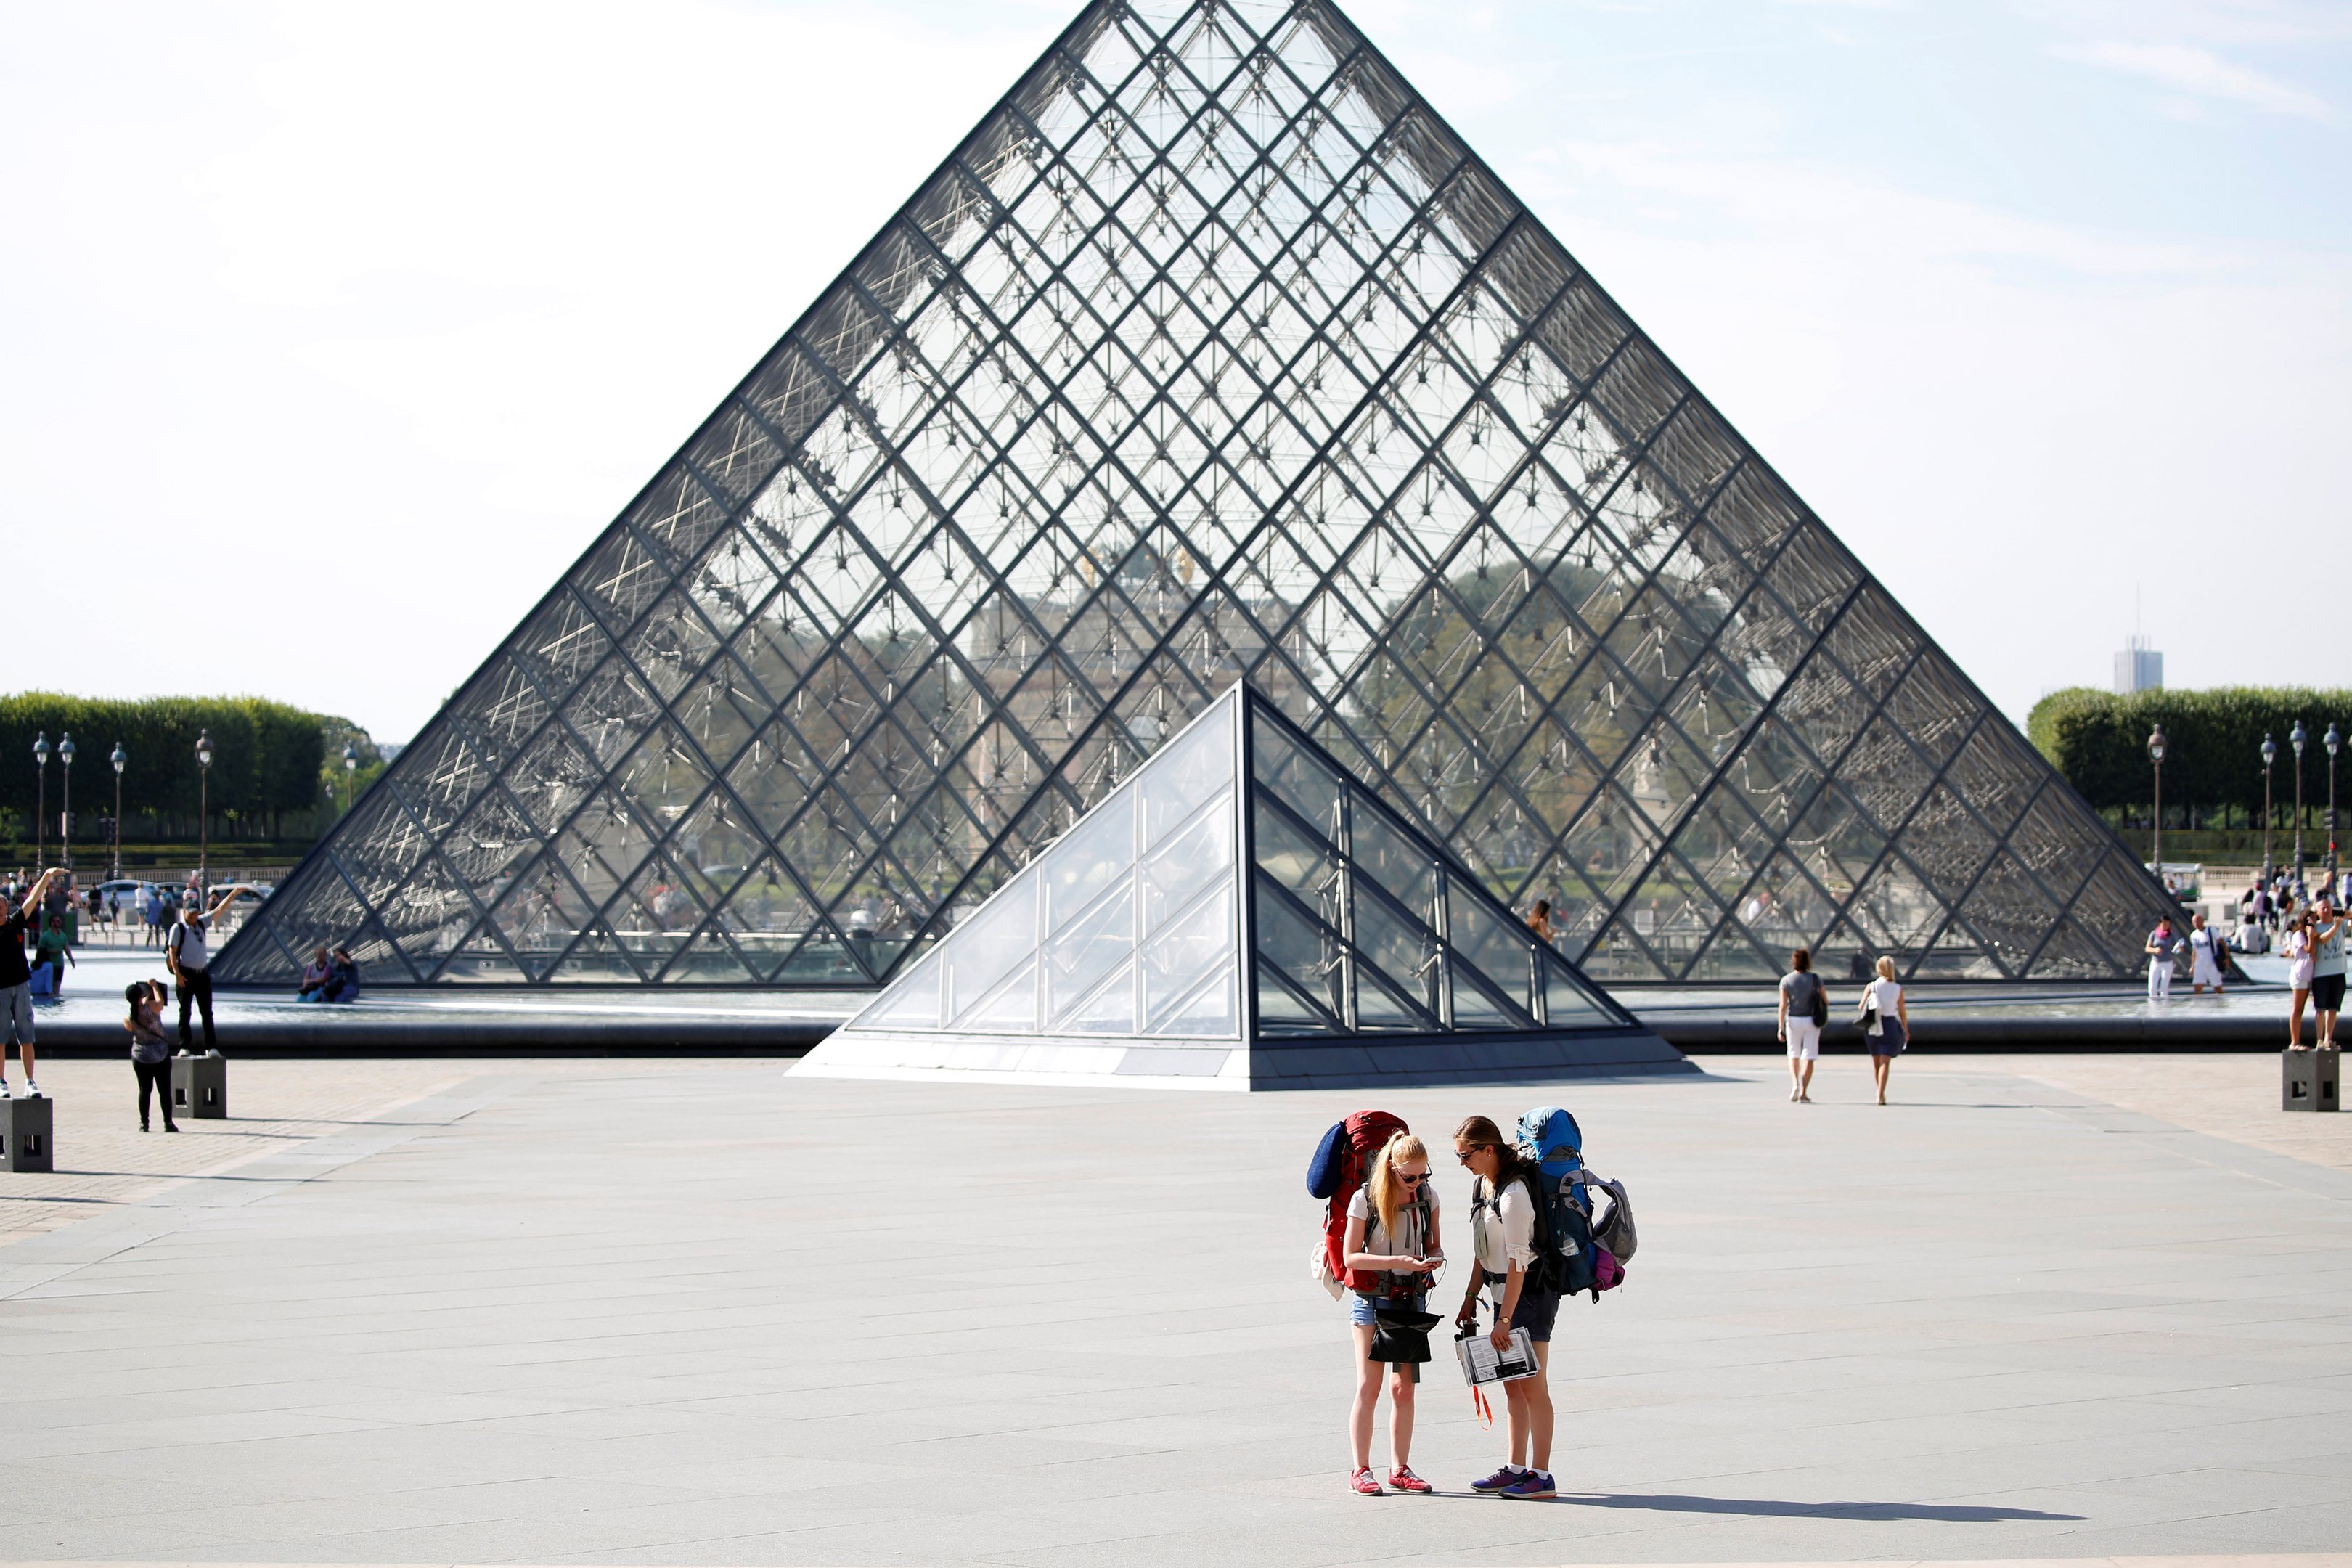 Pirâmide em frente ao Museu do Louvre na França